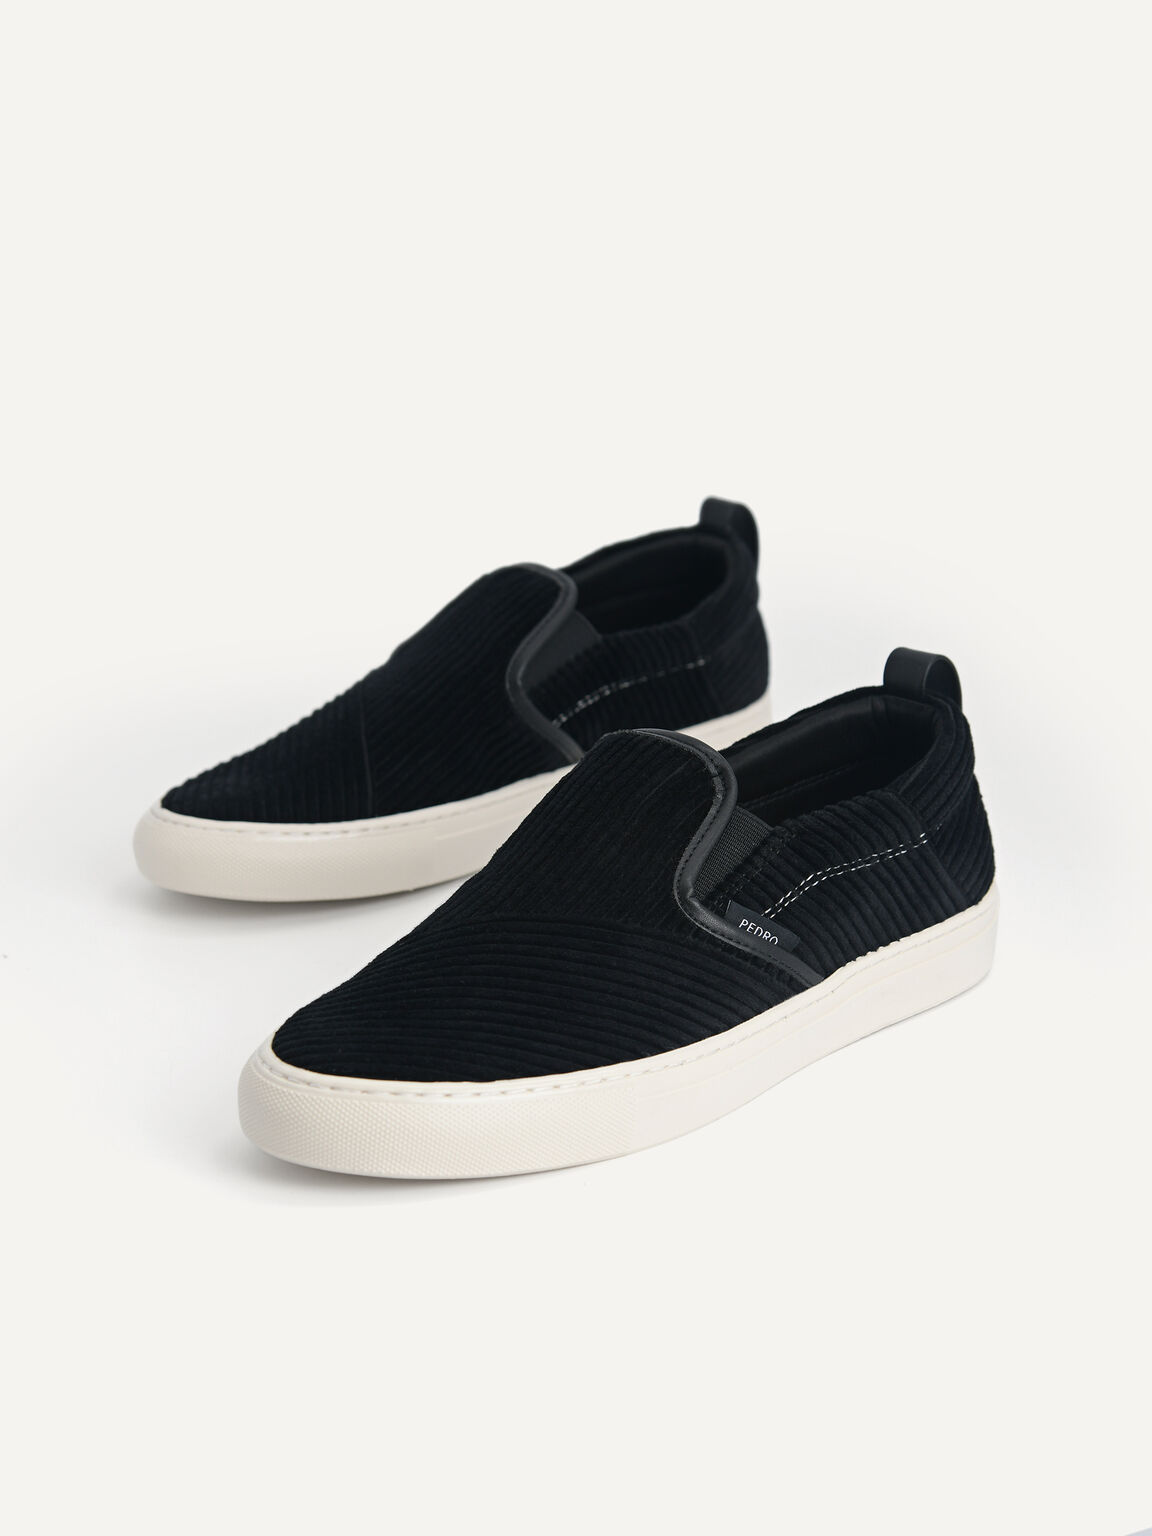 Corduroy Slip-On Sneakers, Black